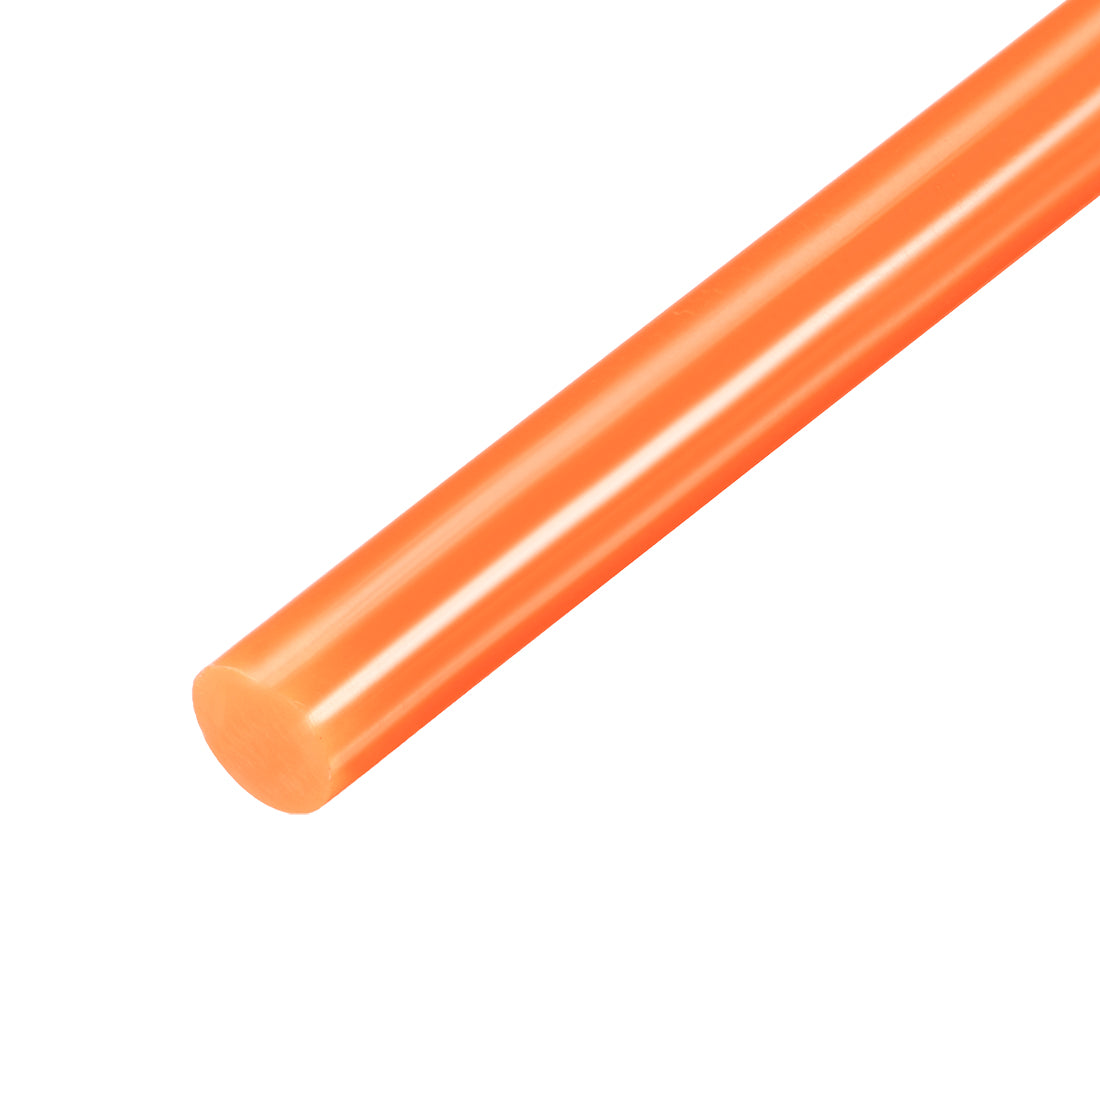 Uxcell Uxcell Hot Melt Glue Gun Sticks, 250mm Long x 7mm Diameter,for Most Glue Guns, Perfect for DIY Craft Projects and Sealing,Light Green,10pcs